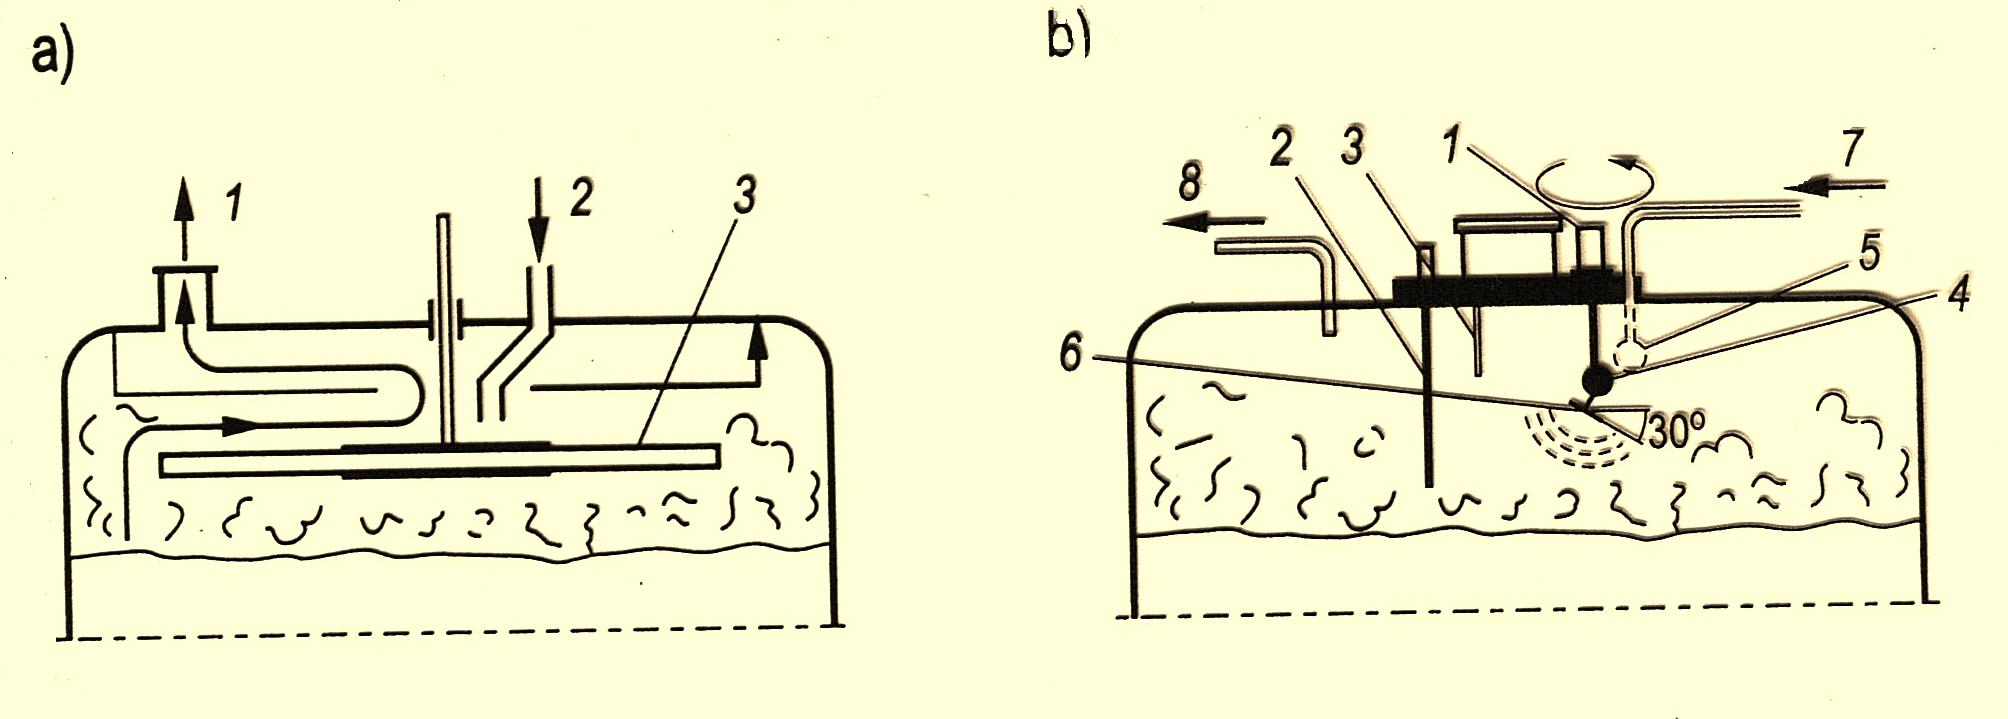 Schemat systemów łamania piany a) metodą mechaniczno-chemiczną przy użyciu szybkoobrotowego dysku (lub mieszadła łapowego umieszczonego miedzy dwoma dyskami) z dodatkiem